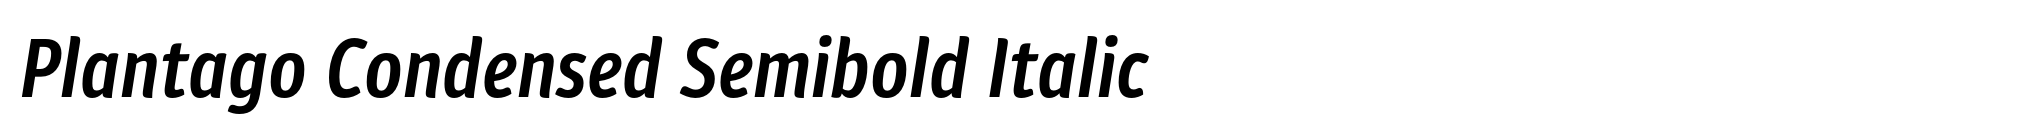 Plantago Condensed Semibold Italic image